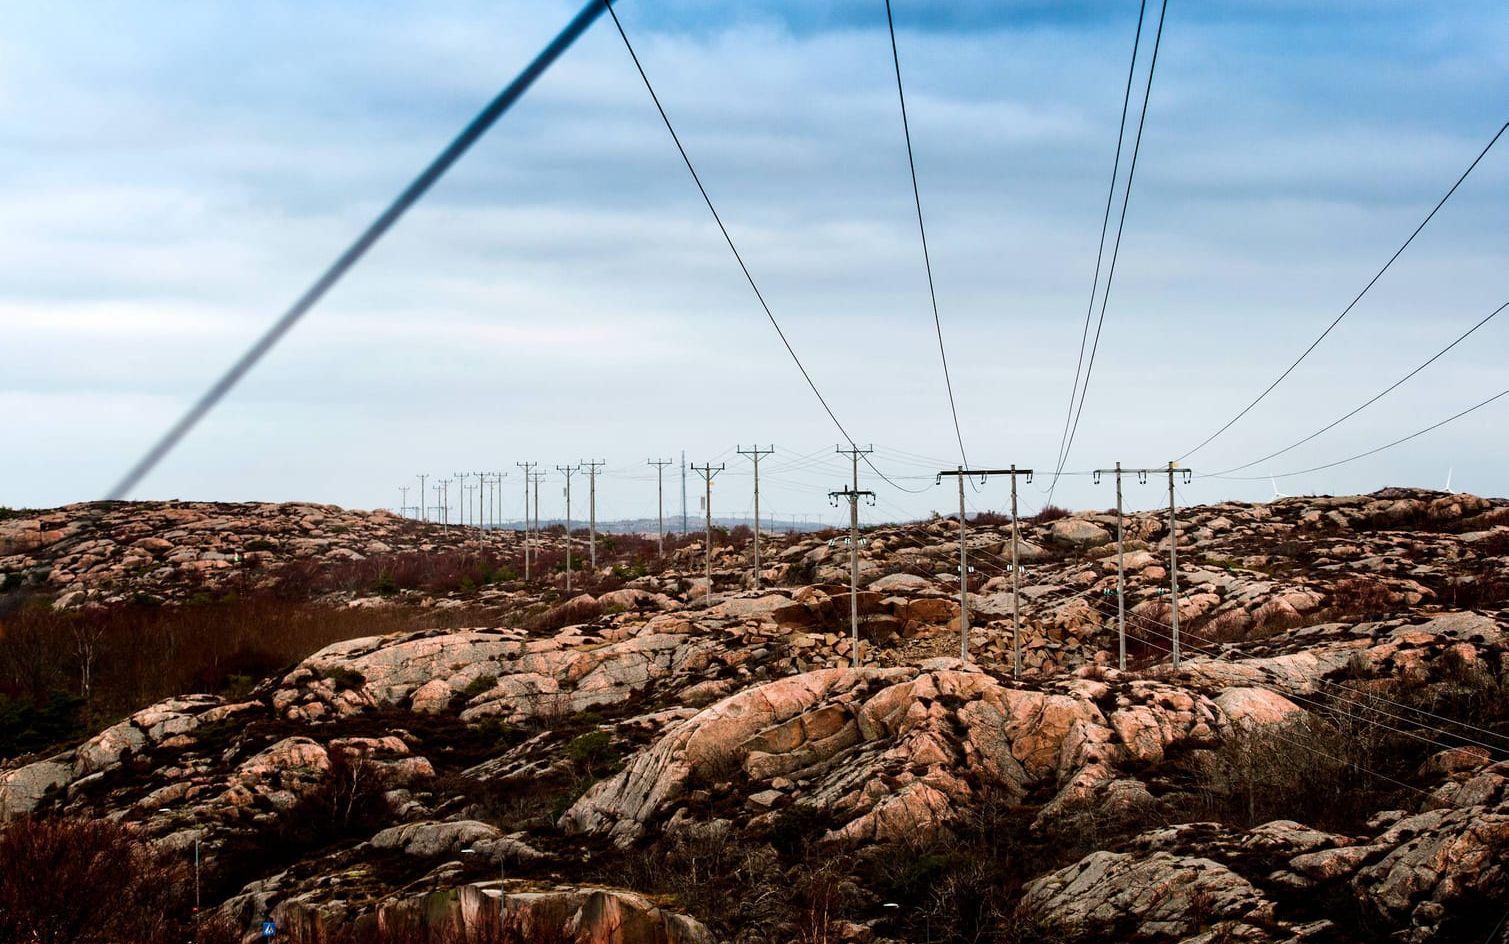 Det här är en del av Fortums elnät i Kungshamn där elen från vågkraften ska ledas vidare ut på det svenska nätet.